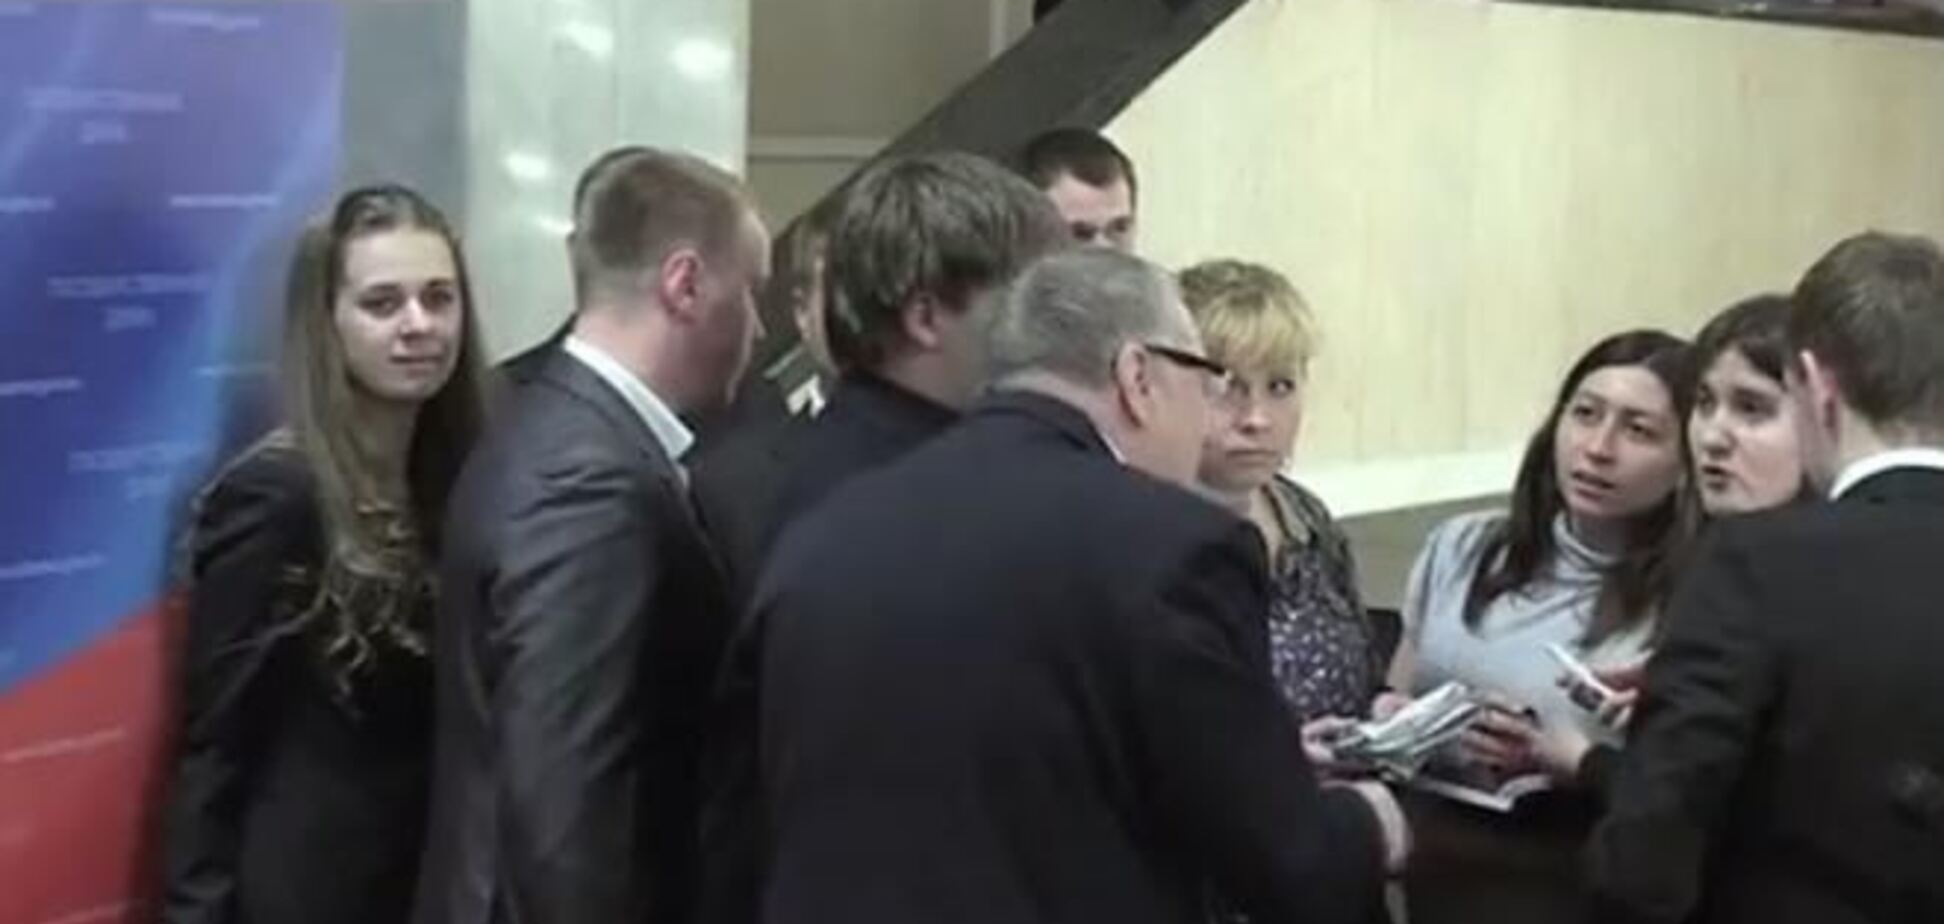 Жириновский приказал изнасиловать беременную журналистку. Видеофакт